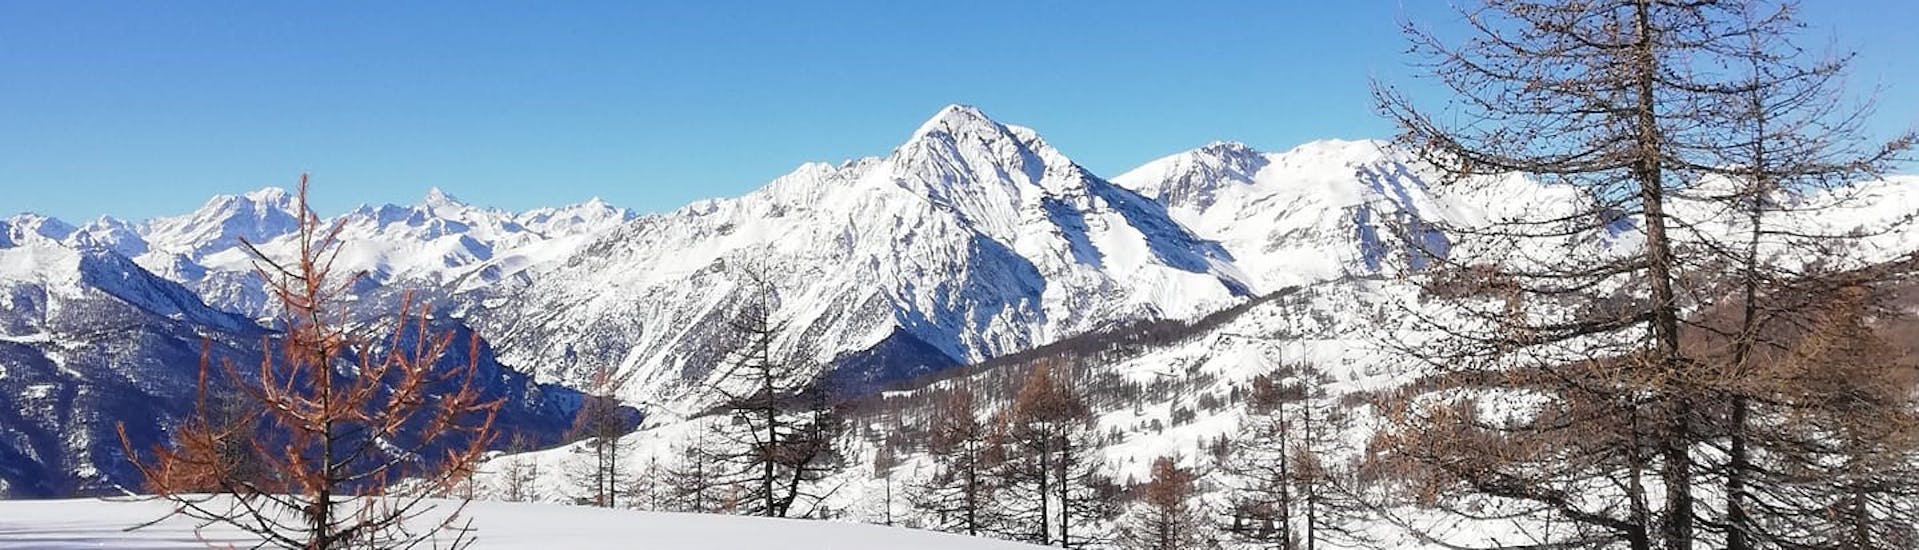 Ein tolles Bild von Pragelato, das mit Schnee bedeckt ist. Perfekte Bedingungen für einen der privaten Freeride-Ski- und Snowboardkurse.